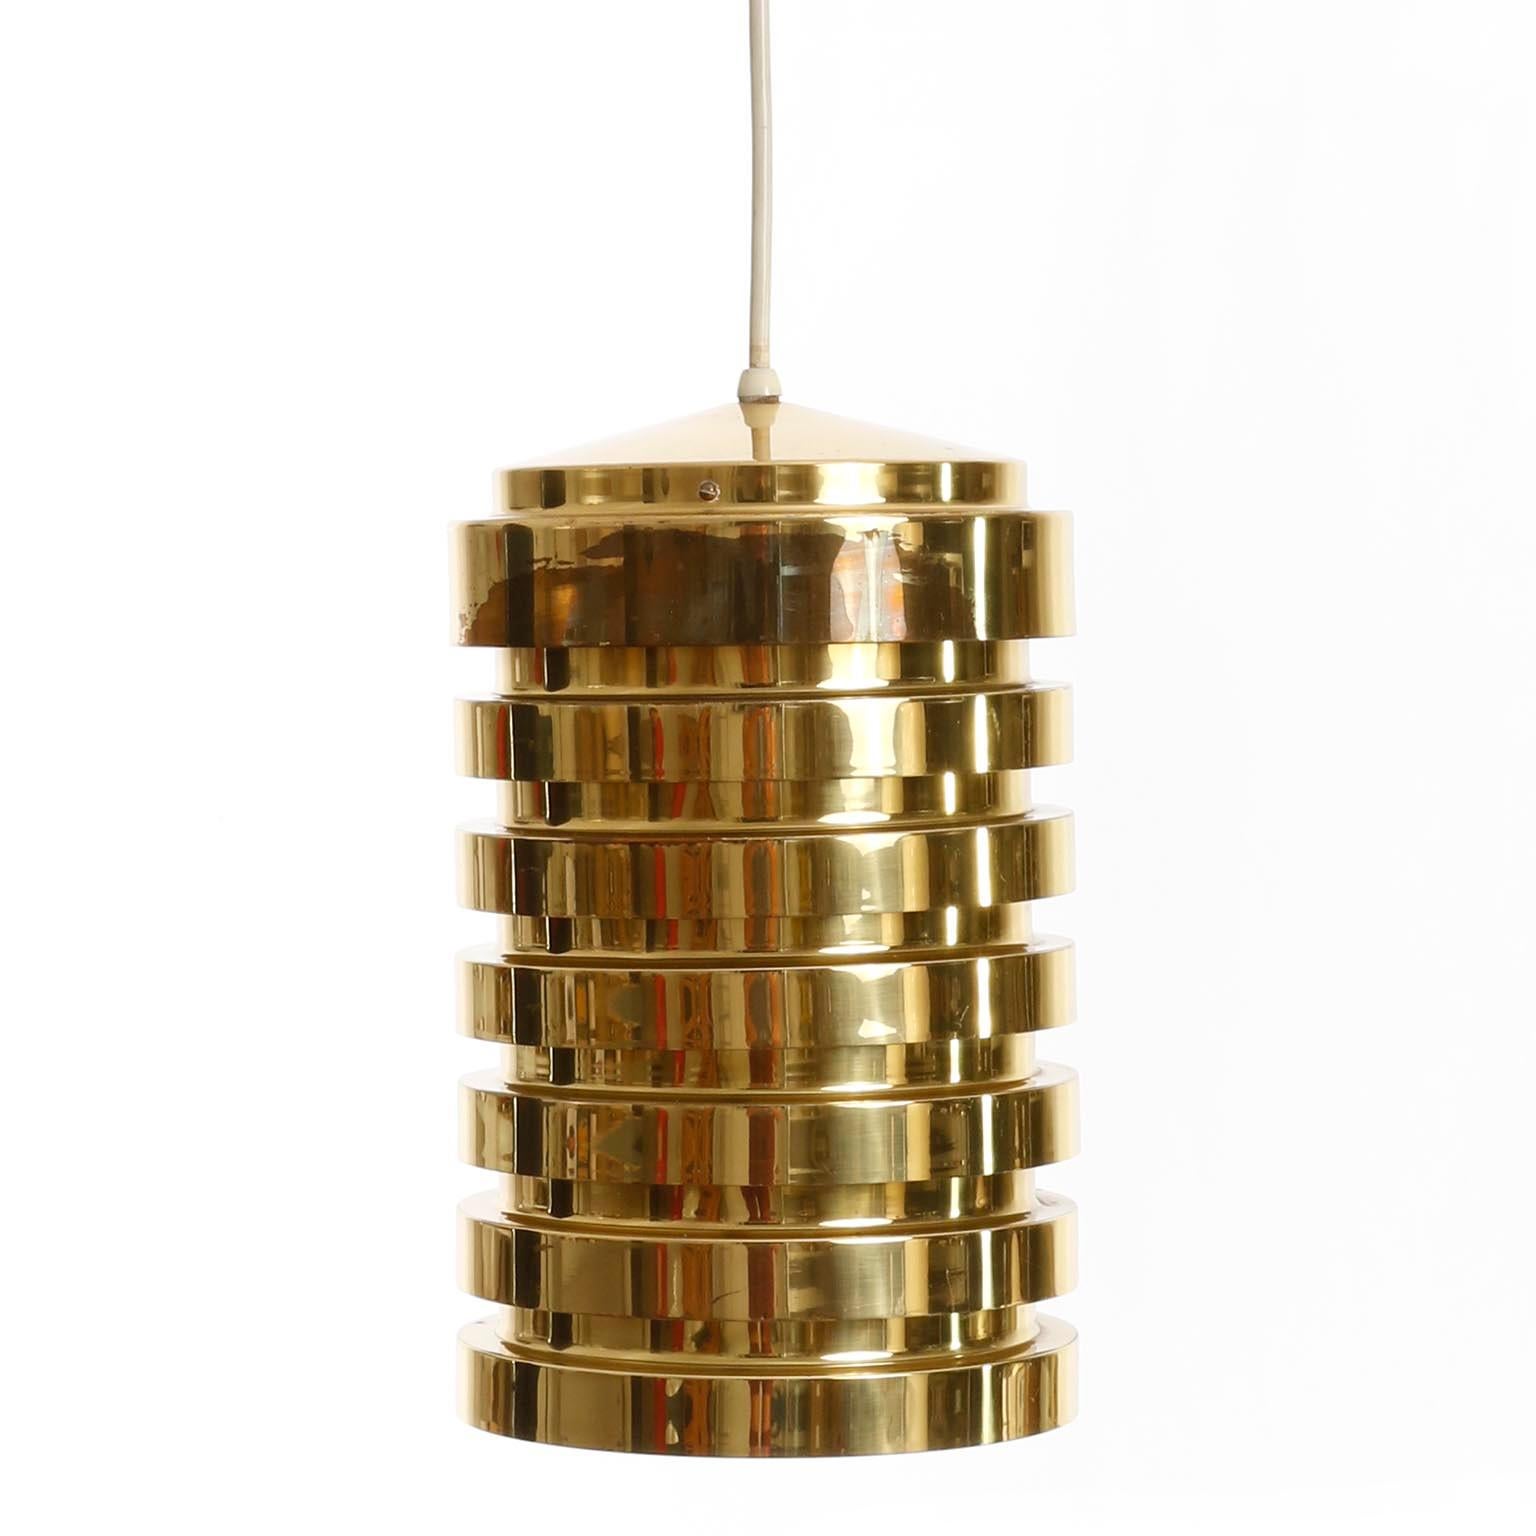 Swedish Mid-Century Modern Brass Pendant Light T487, Hans-Agne Jakobsson Markaryd, 1960s For Sale